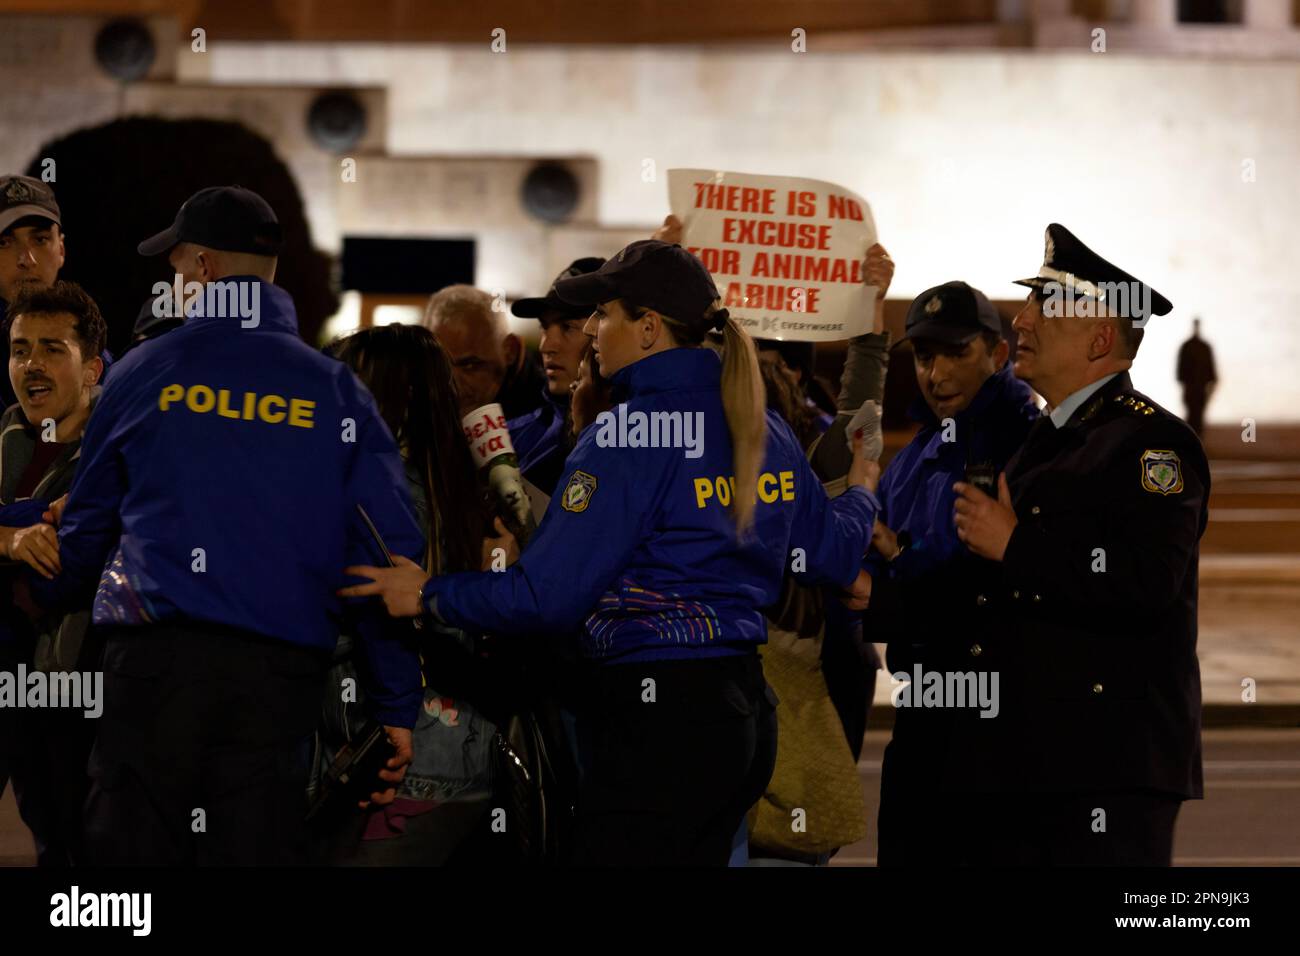 Protesta degli attivisti vegani contro gli abusi sugli animali e il consumo di carne durante i festeggiamenti pasquali, mentre i poliziotti in uniforme blu li spingono indietro. Foto Stock